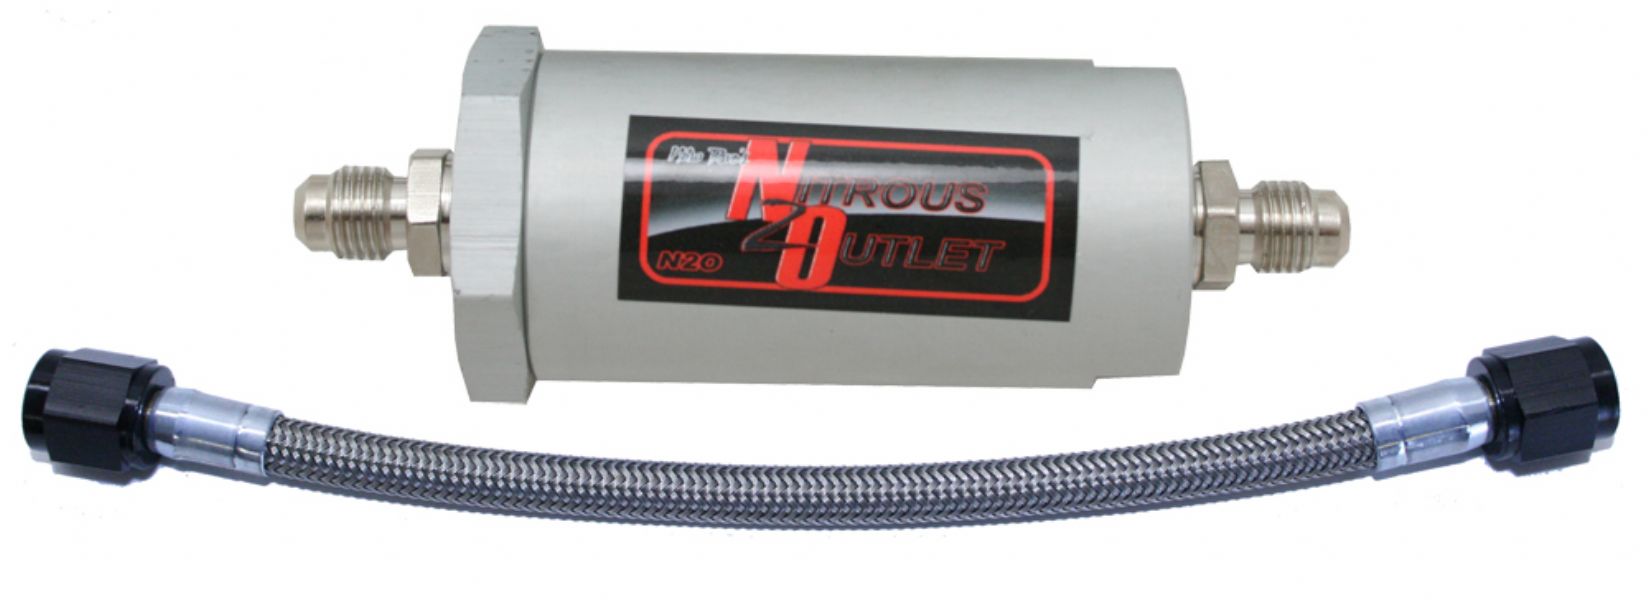 Nitrous Outlet -4 Nitrous Filter